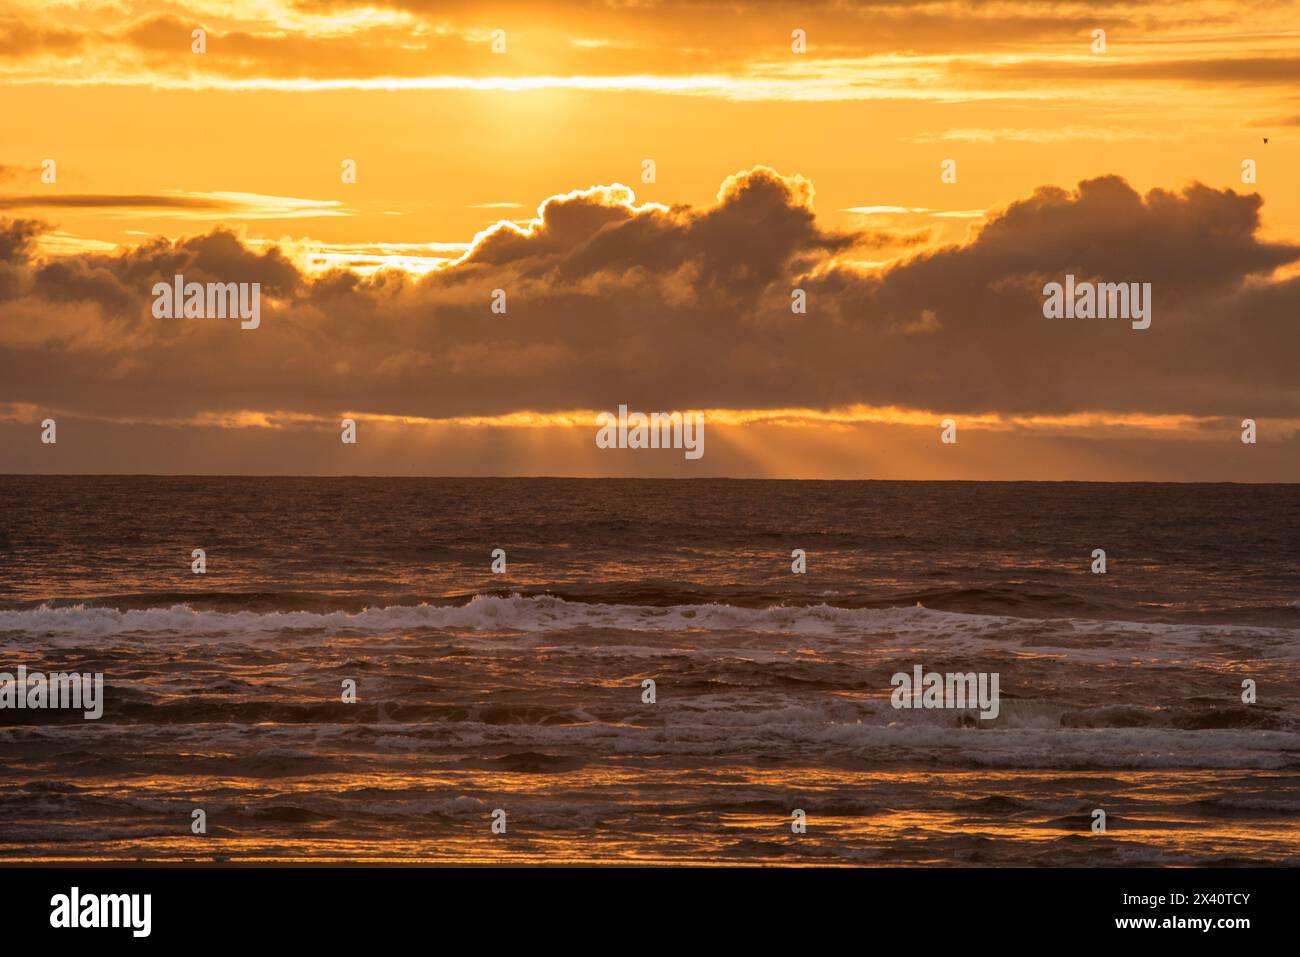 Beau coucher de soleil avec les doigts de Dieu s'étendant vers le bas de derrière les nuages au-dessus de l'océan Pacifique de la plage à Cape Disception State Park ... Banque D'Images